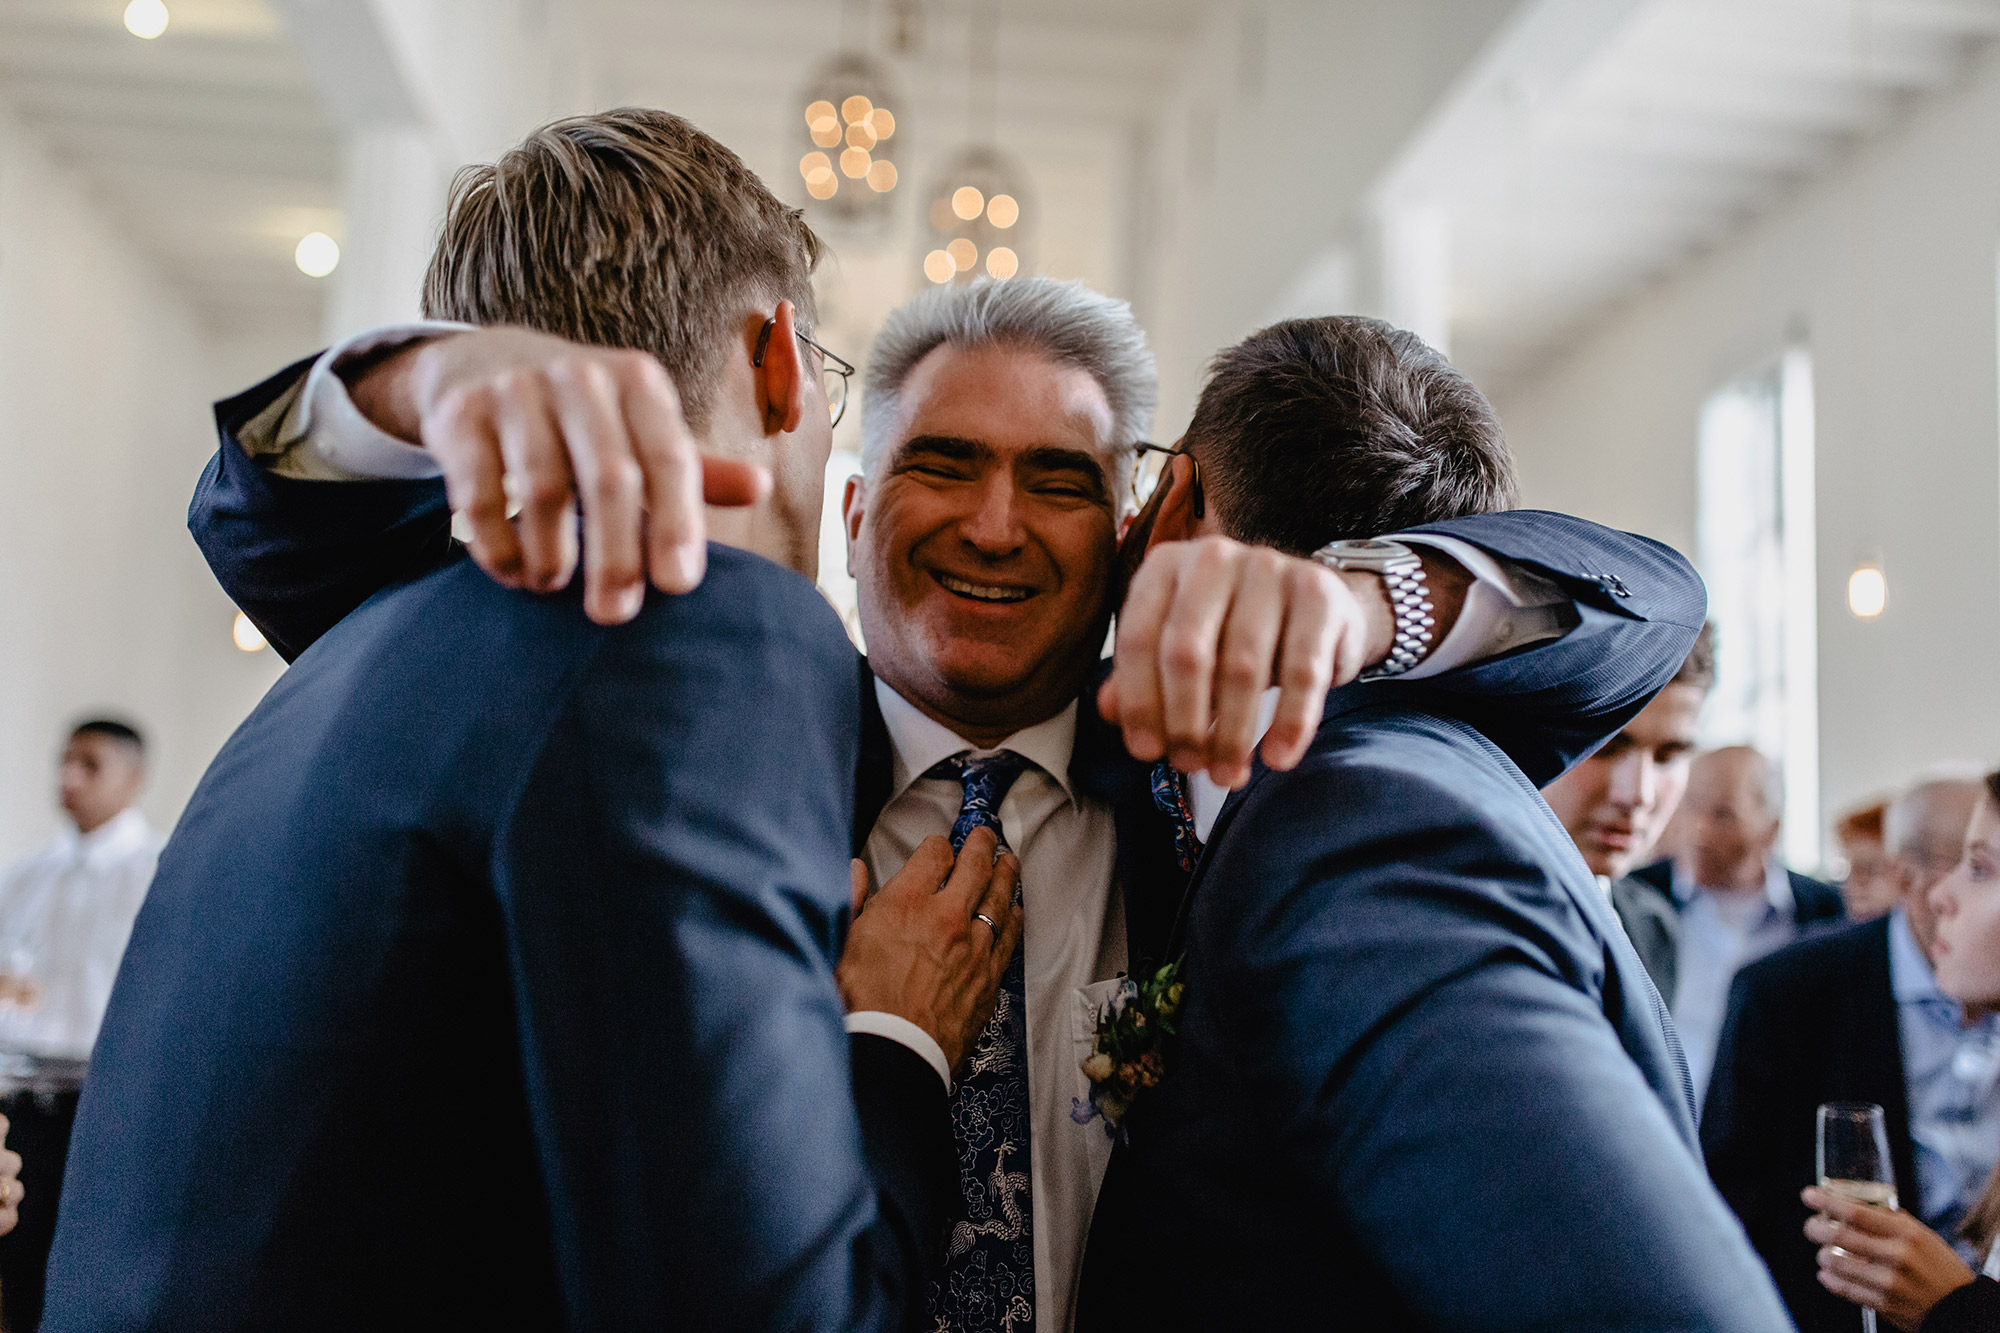 Mann gratuliert zwei Bräutigamen